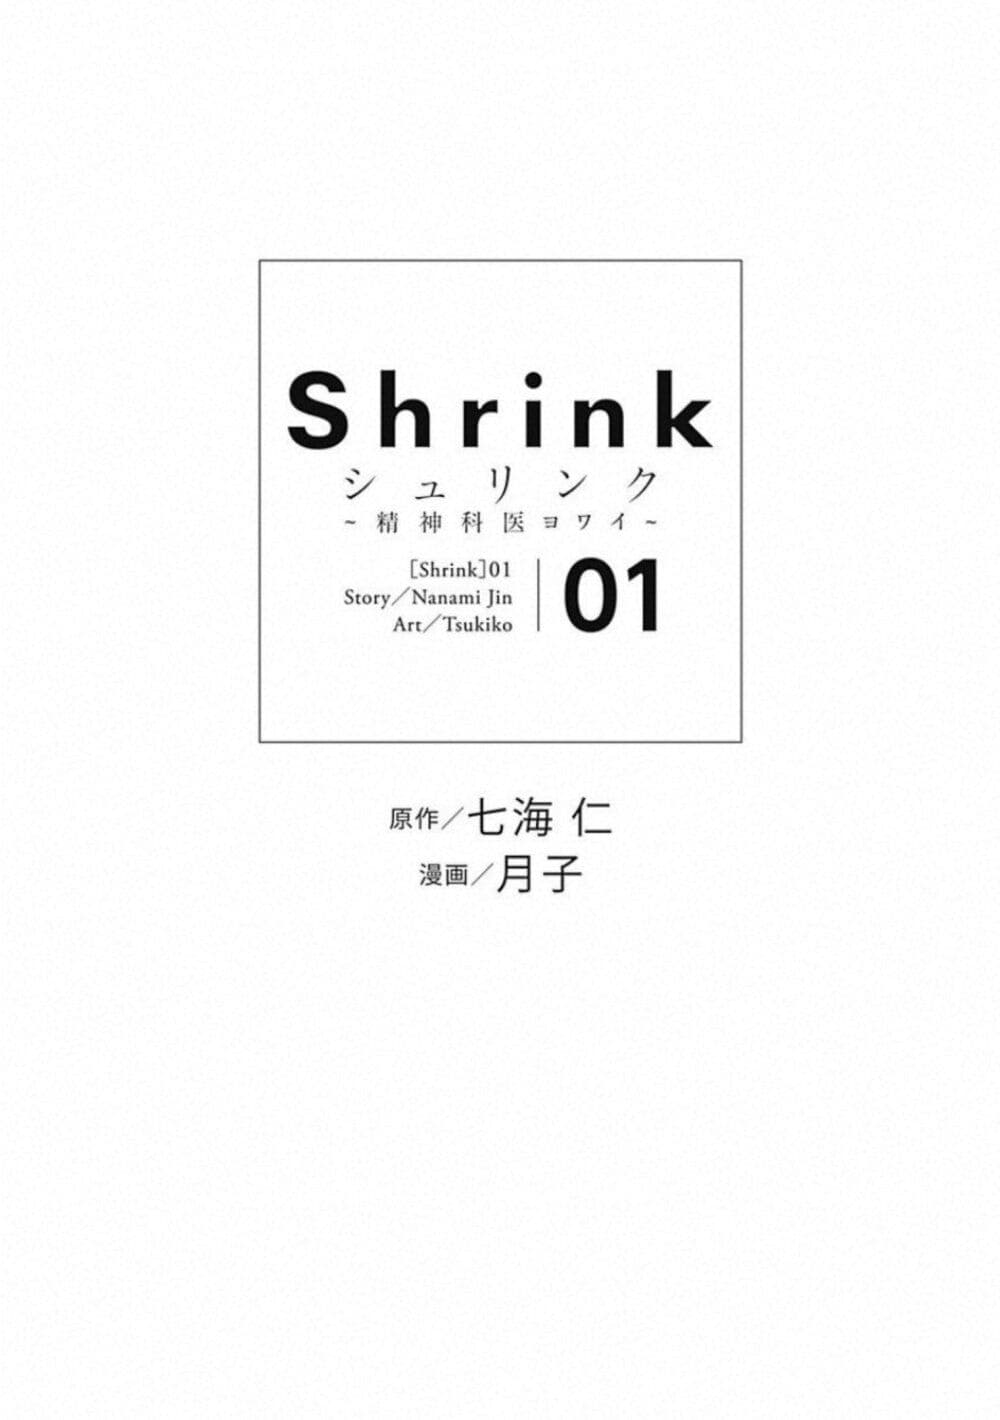 Shrink Seishinkai Yowai 2 04